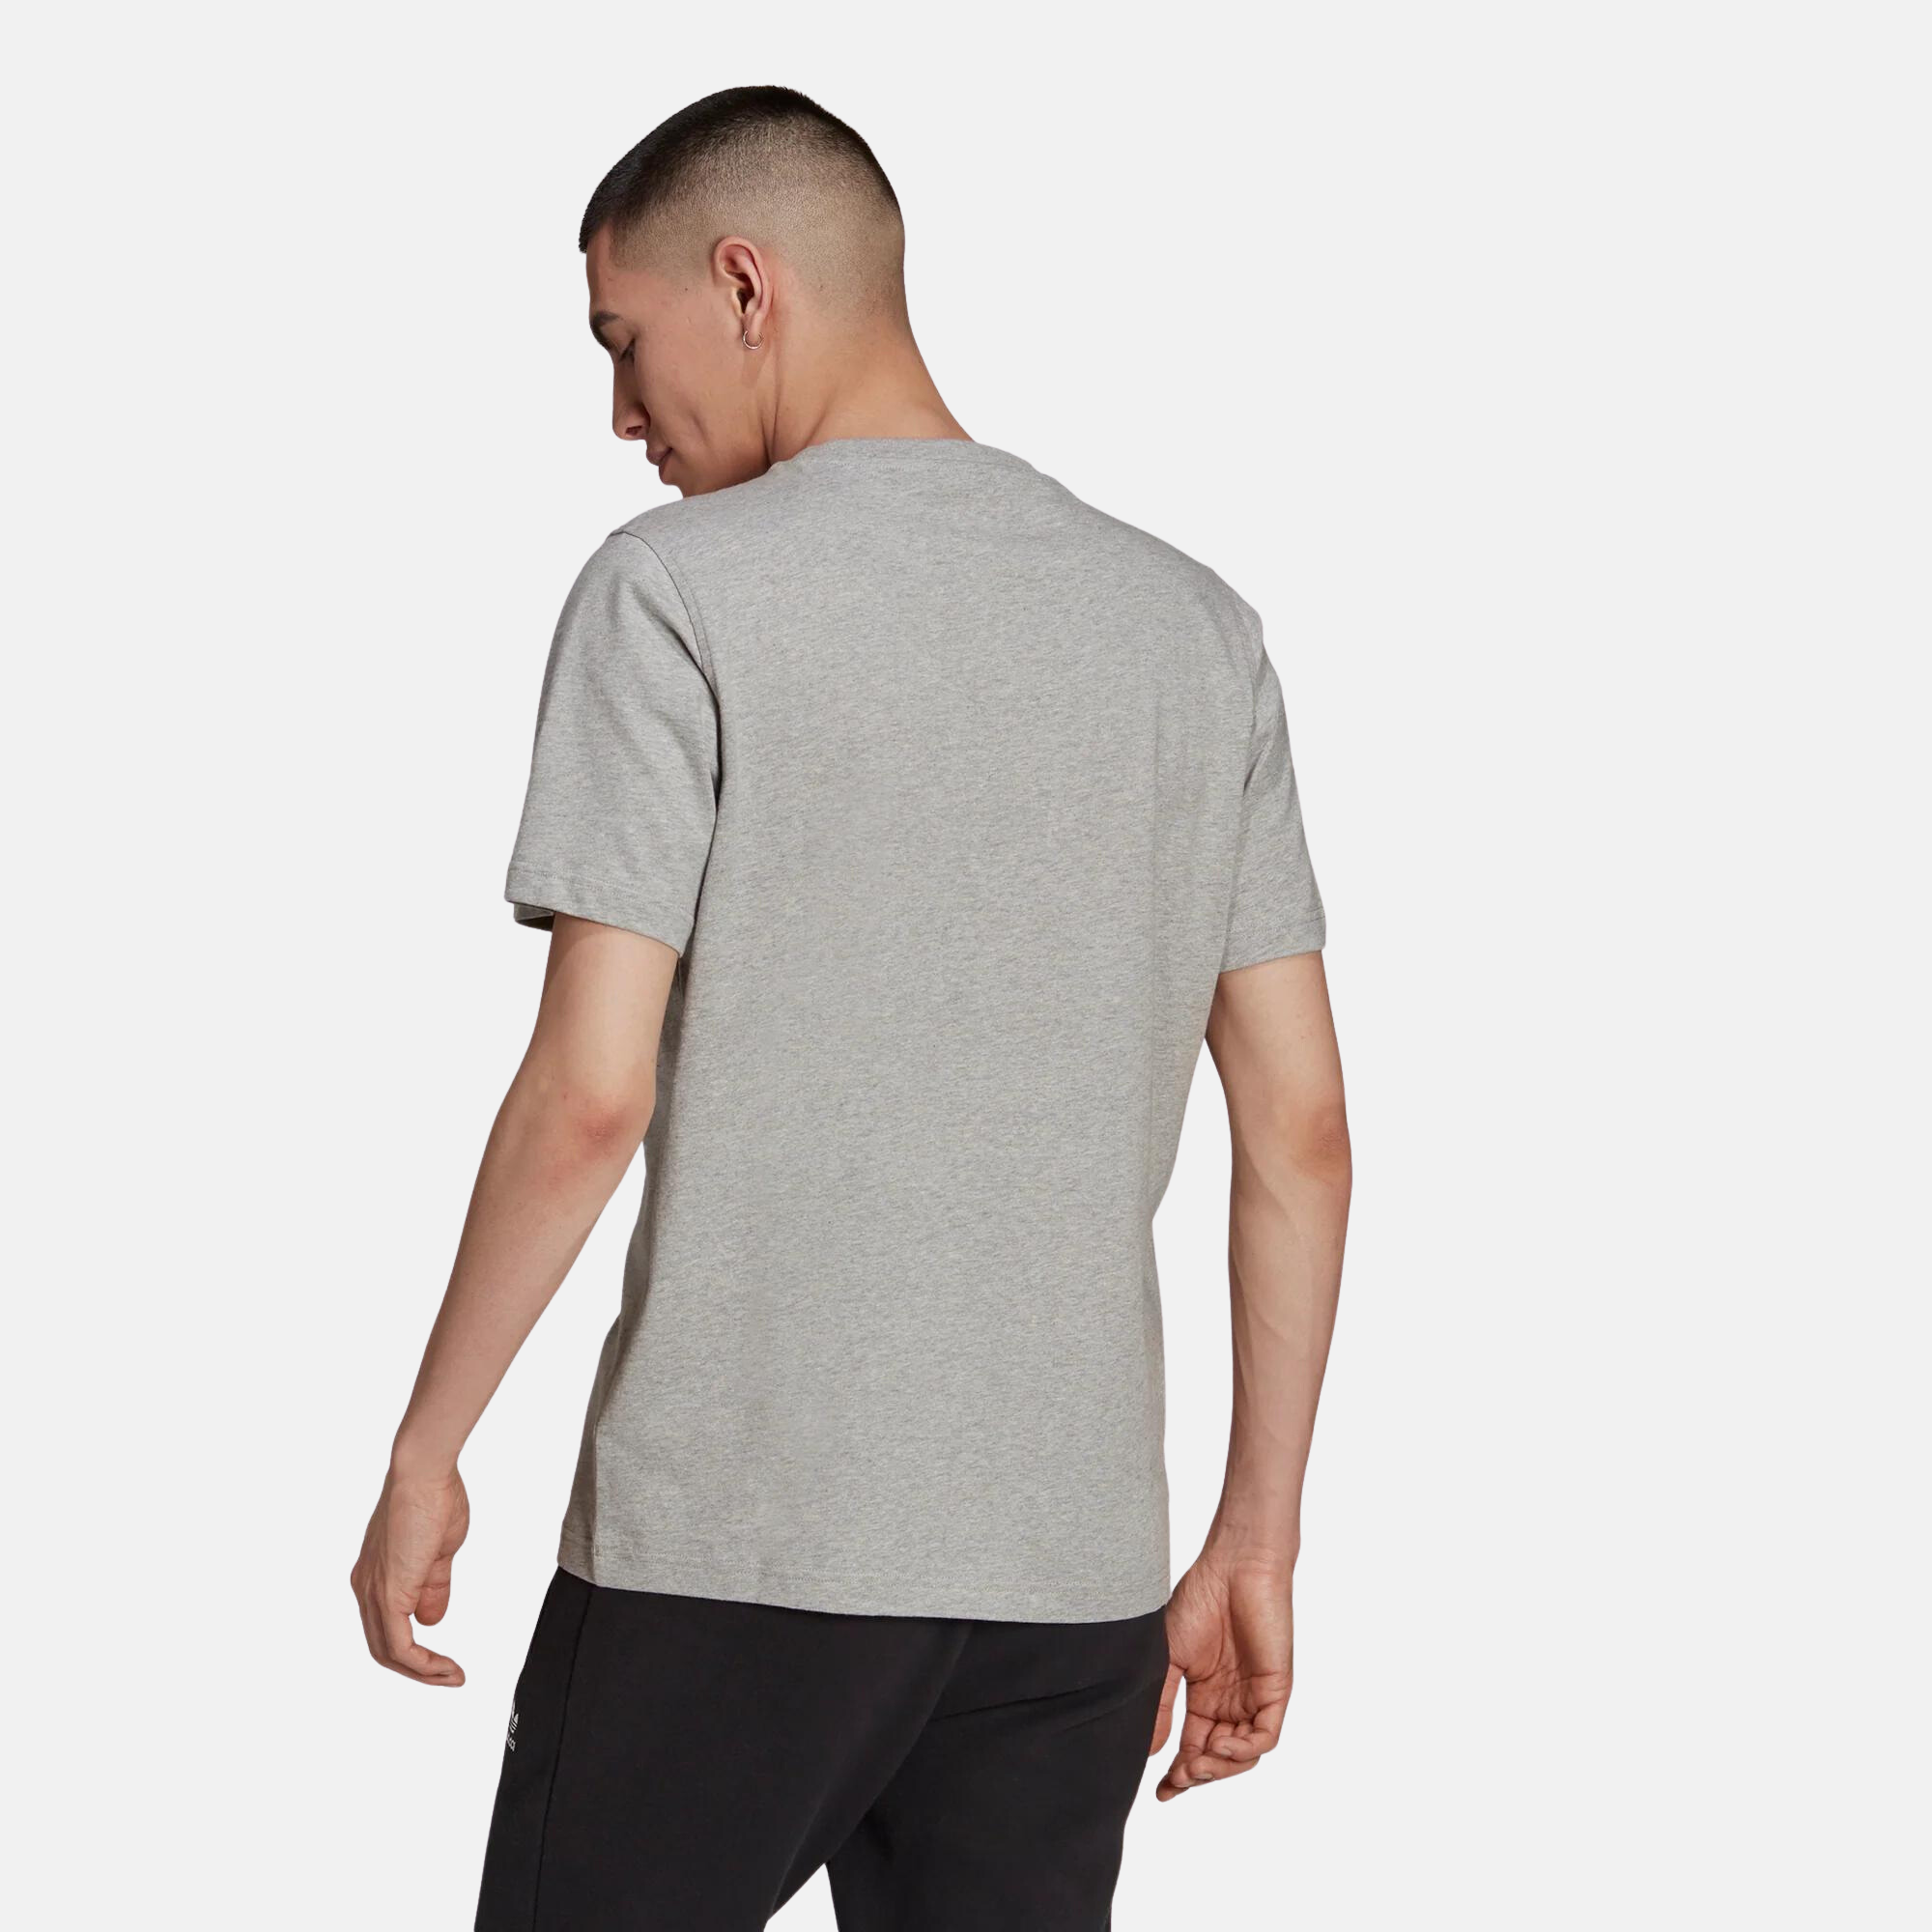 Adidas Originals Grey White T-Shirt